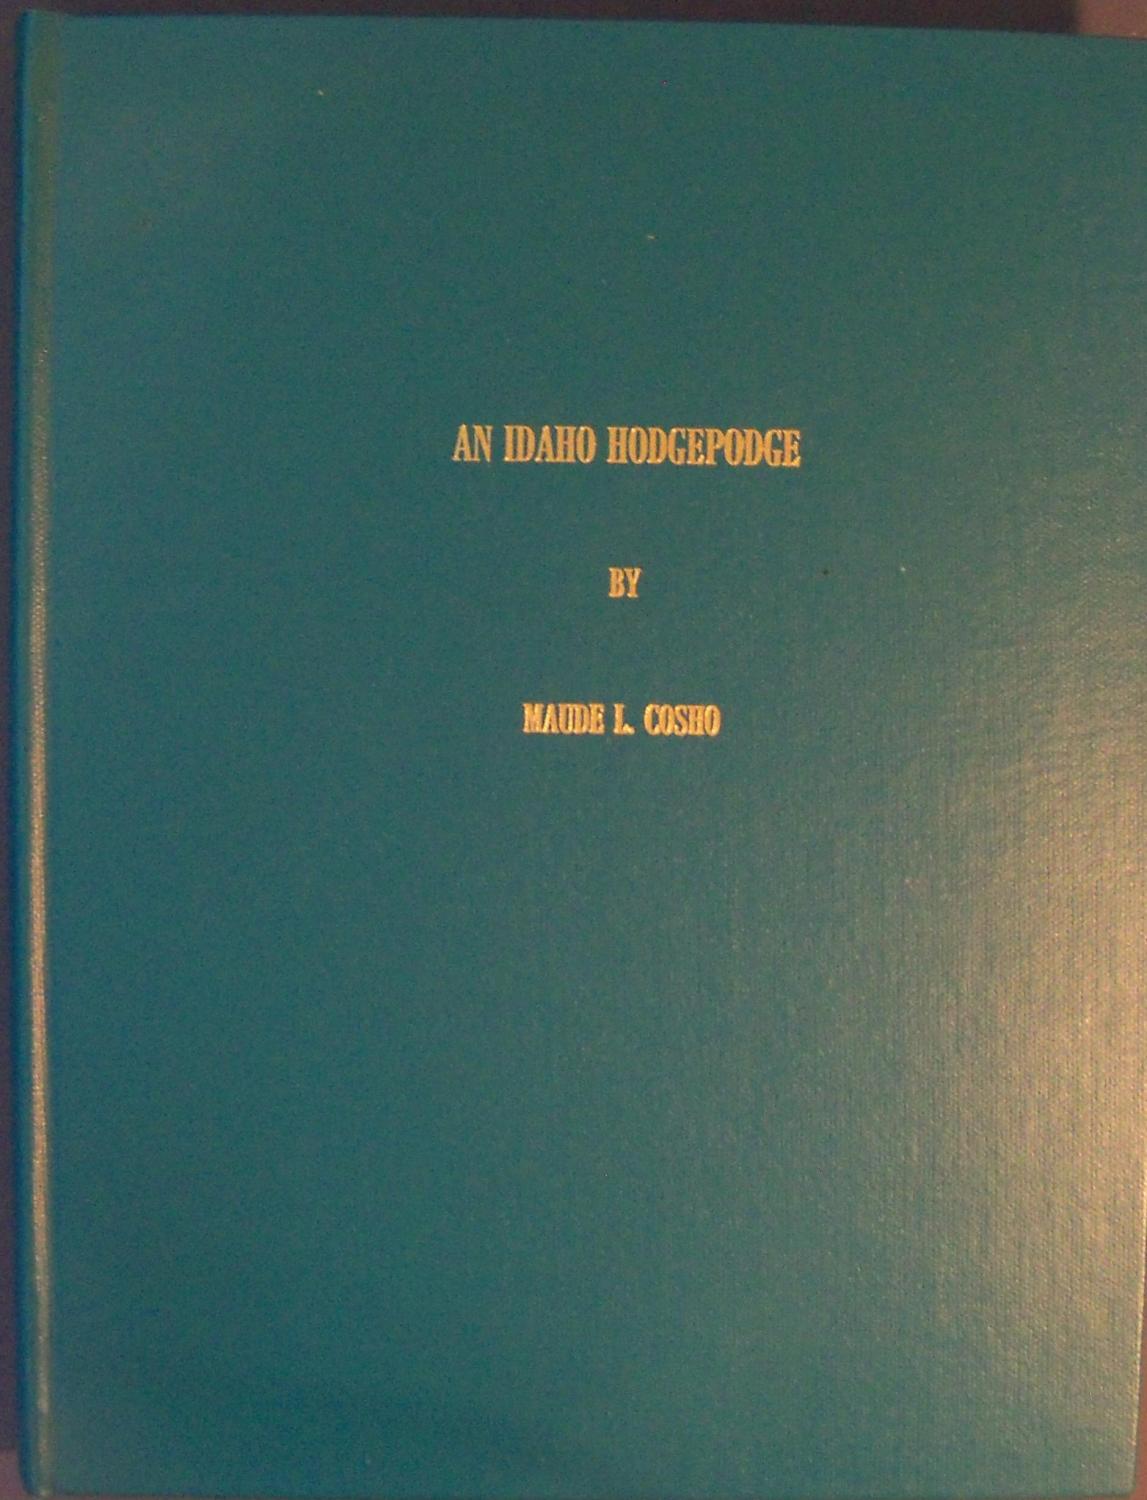 An Idaho hodgepodge (book cover)